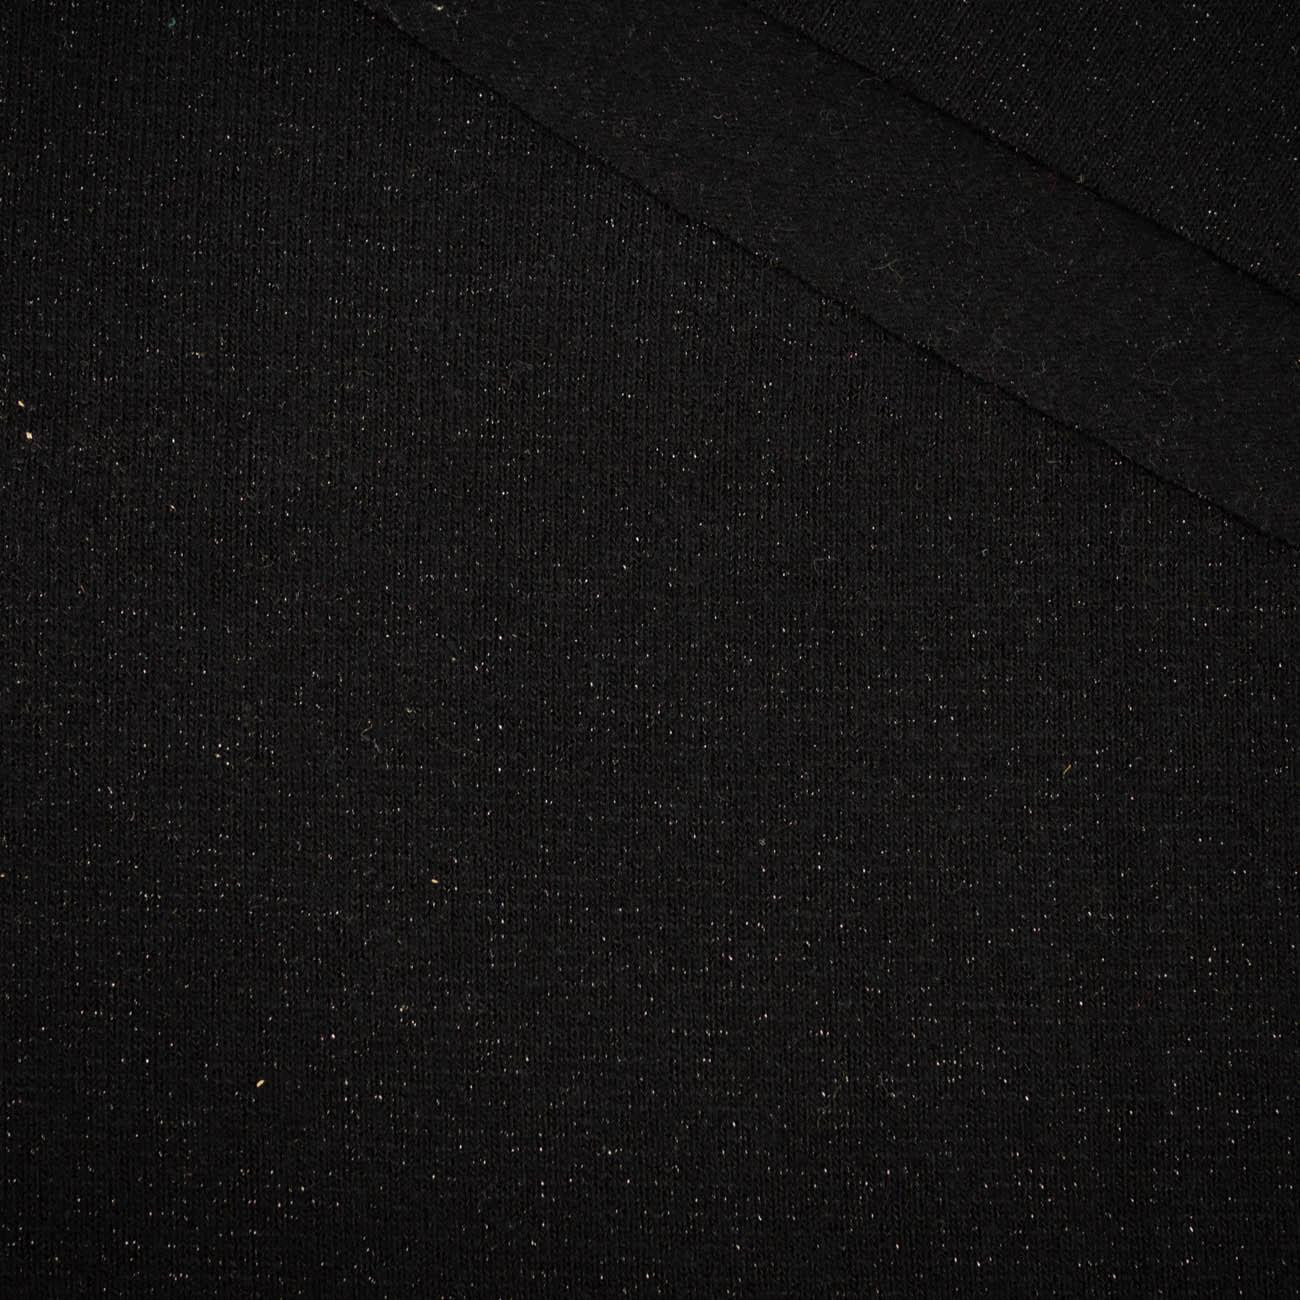 černá - Pletený svetr Emery 200g